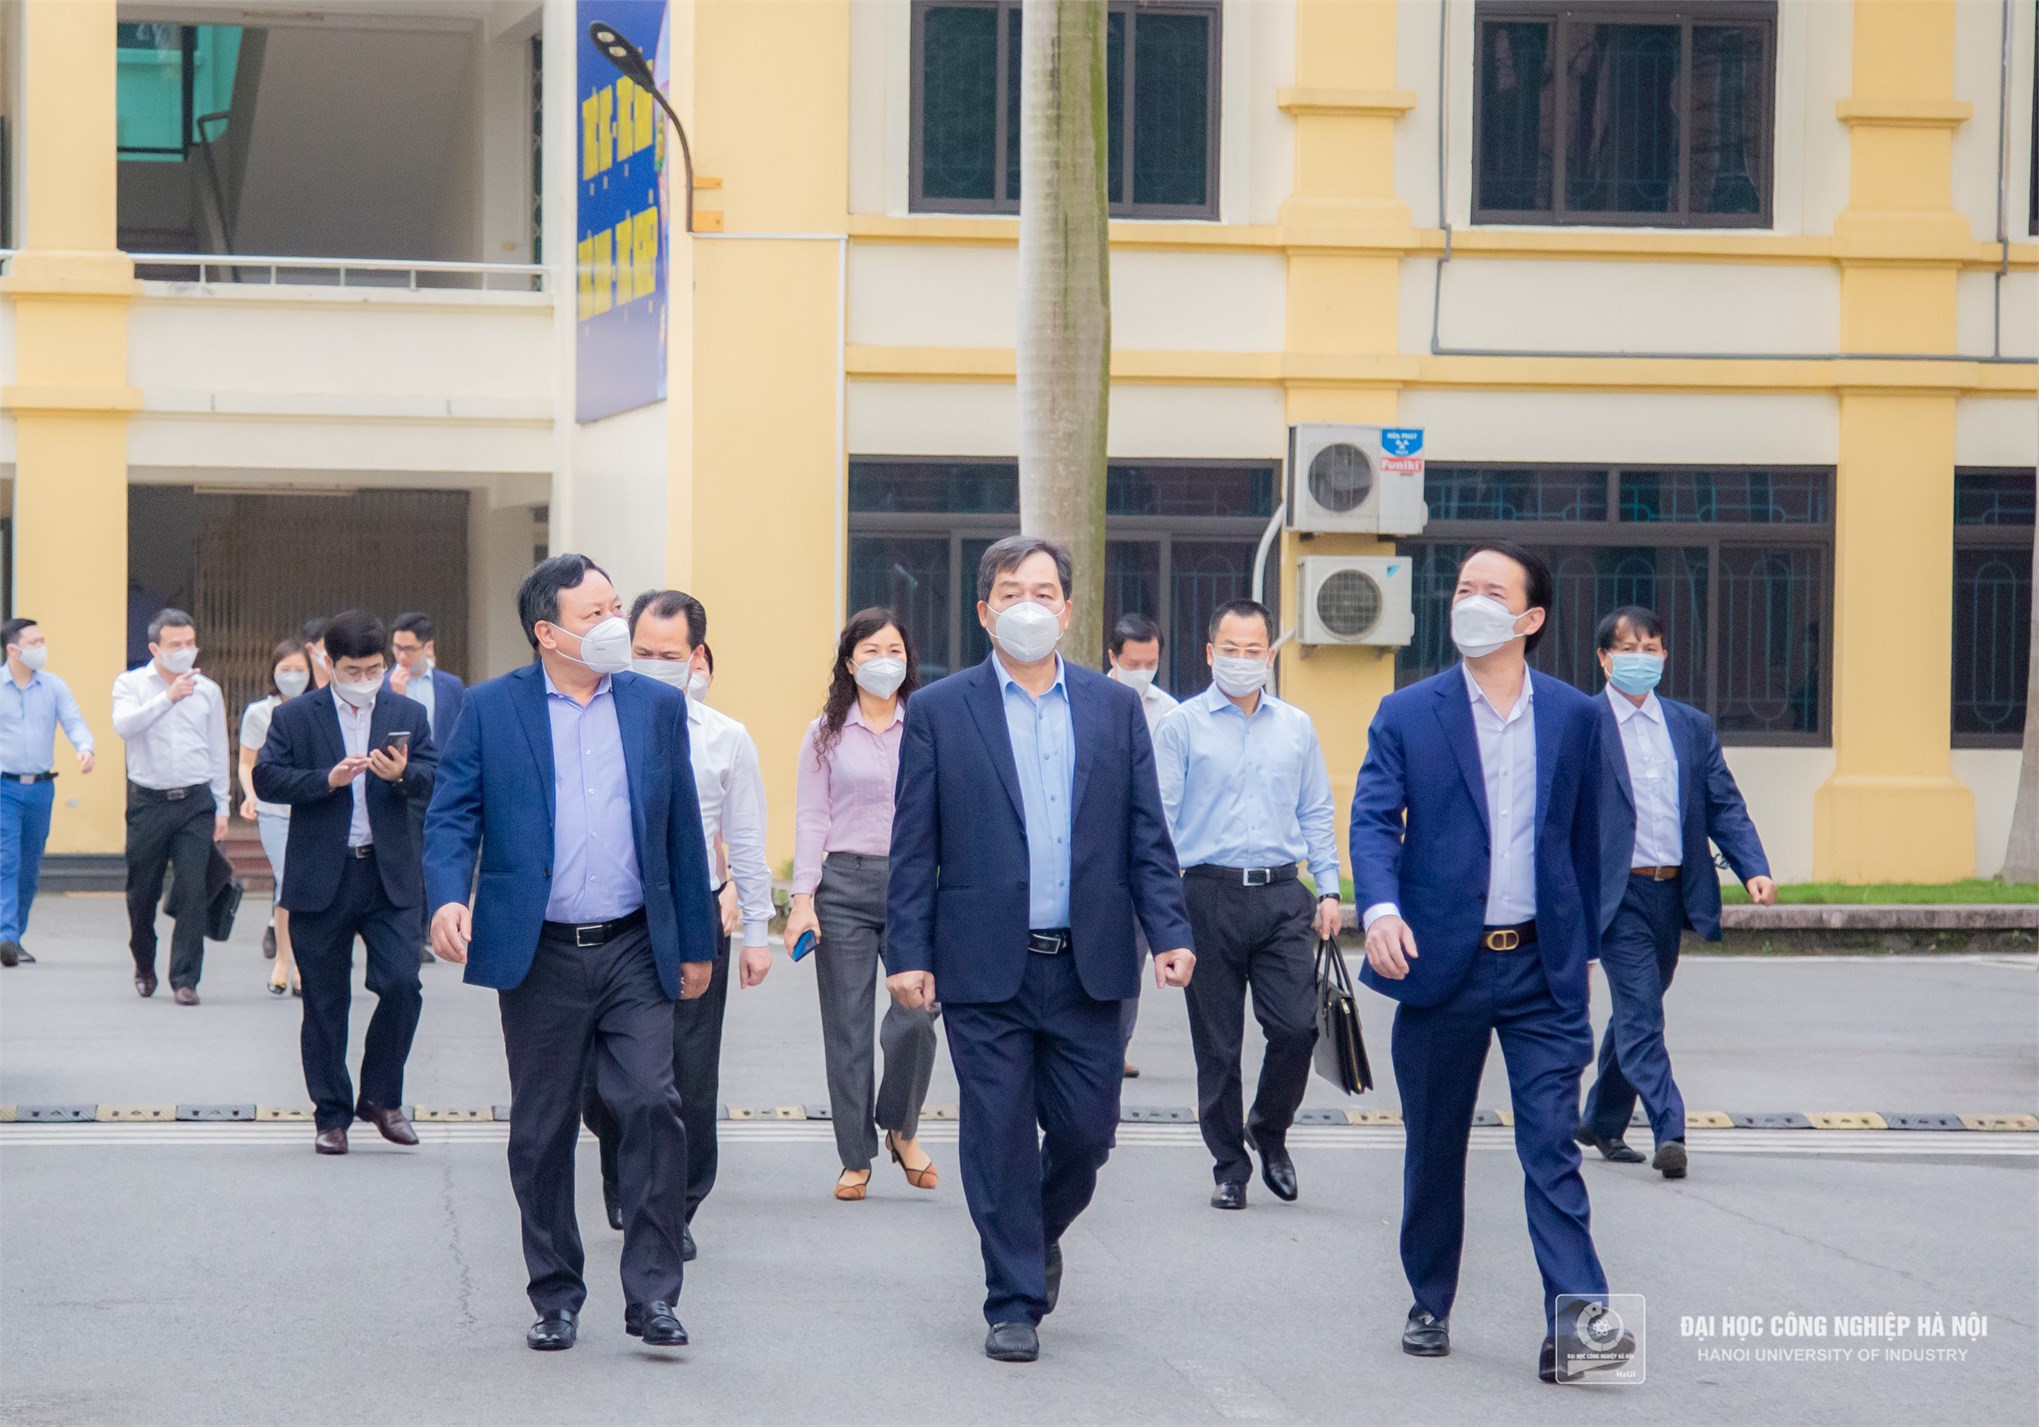 Đồng chí Nguyễn Văn Phong - Phó Bí thư Thành ủy Hà Nội kiểm tra công tác phòng chống dịch Covid-19 tại Đại học Công nghiệp Hà Nội